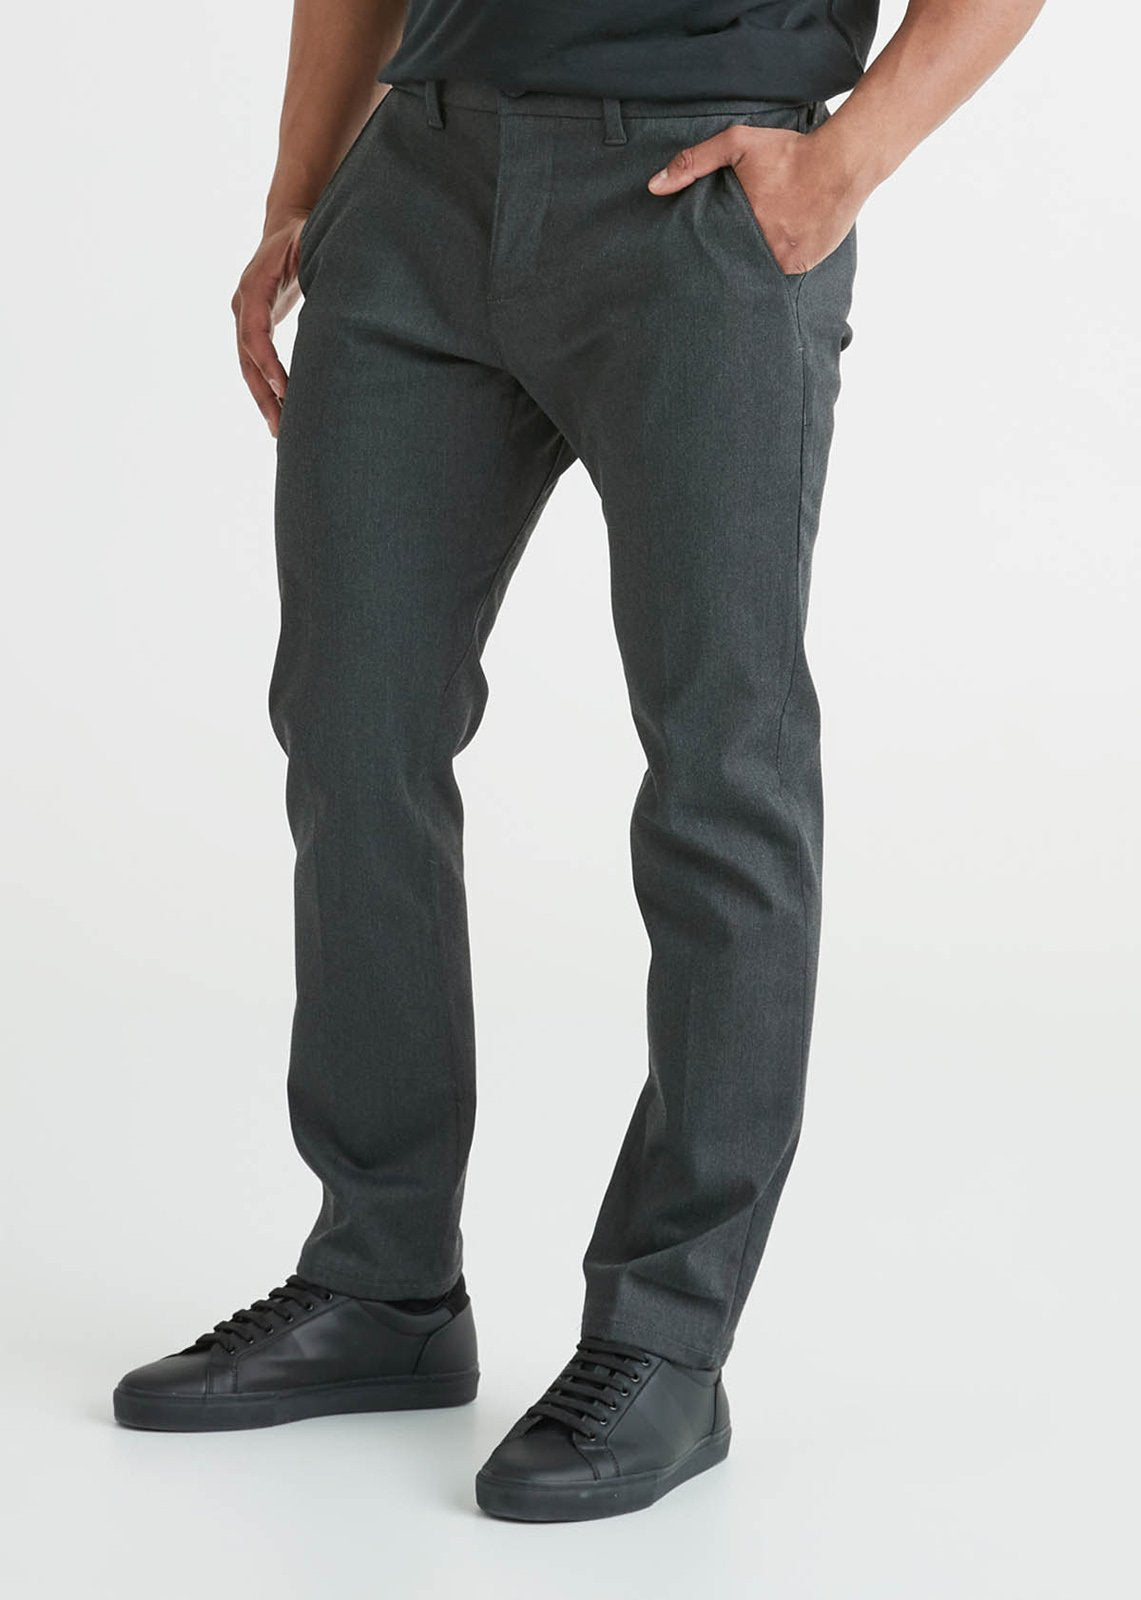 Desert Khaki $ 135 - Modal cashmere leggings - DUER Men's No Sweat Relaxed  Taper Pants